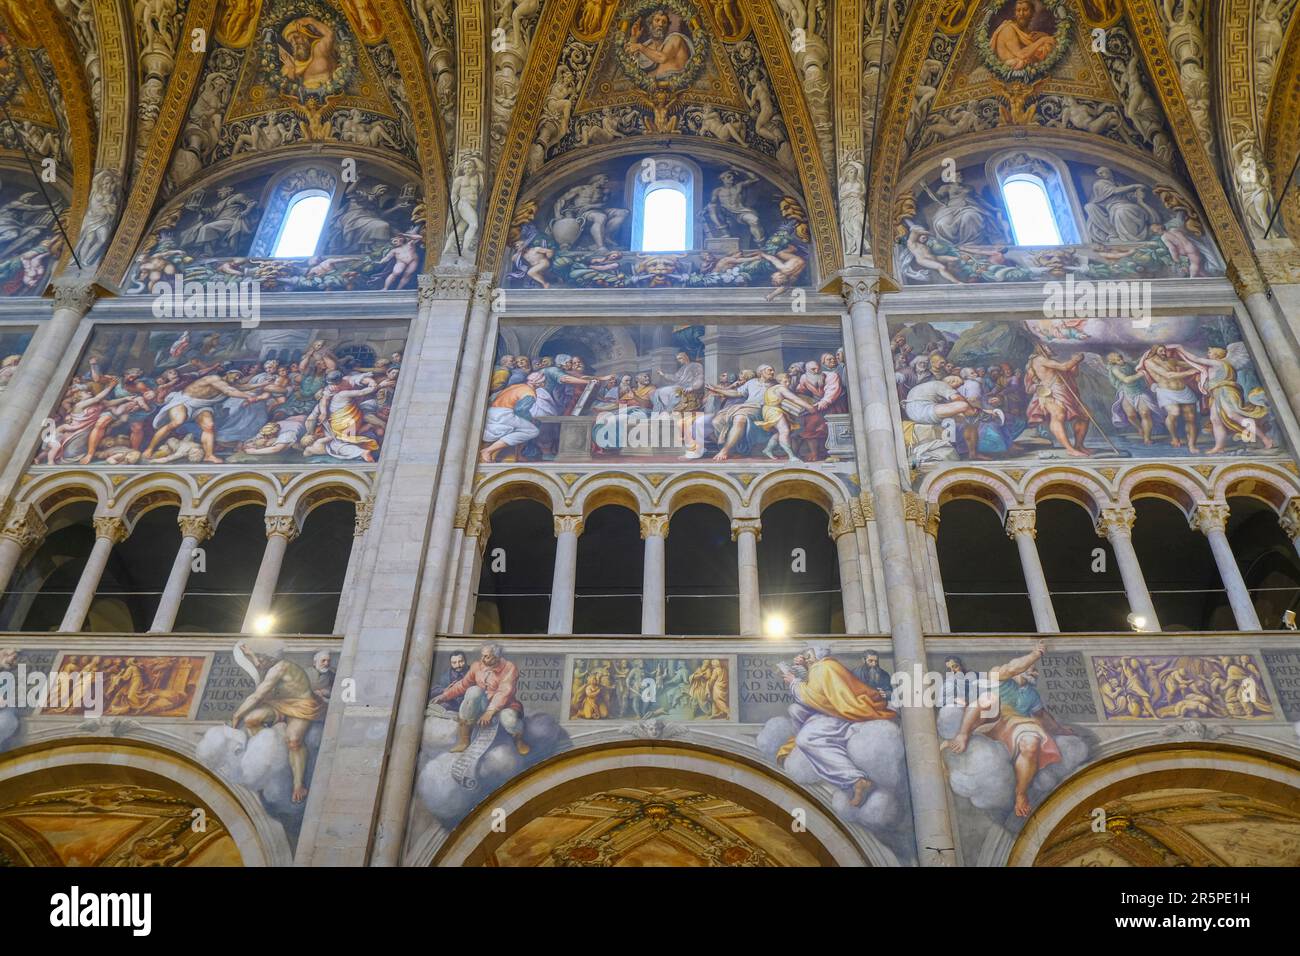 Mai 2023 Parma, Italien: Bemalte Decken und Wände der Kathedrale Santa Maria Assunta, Duomo di Parma. Innenseite des Doms von Parma, Italien Stockfoto